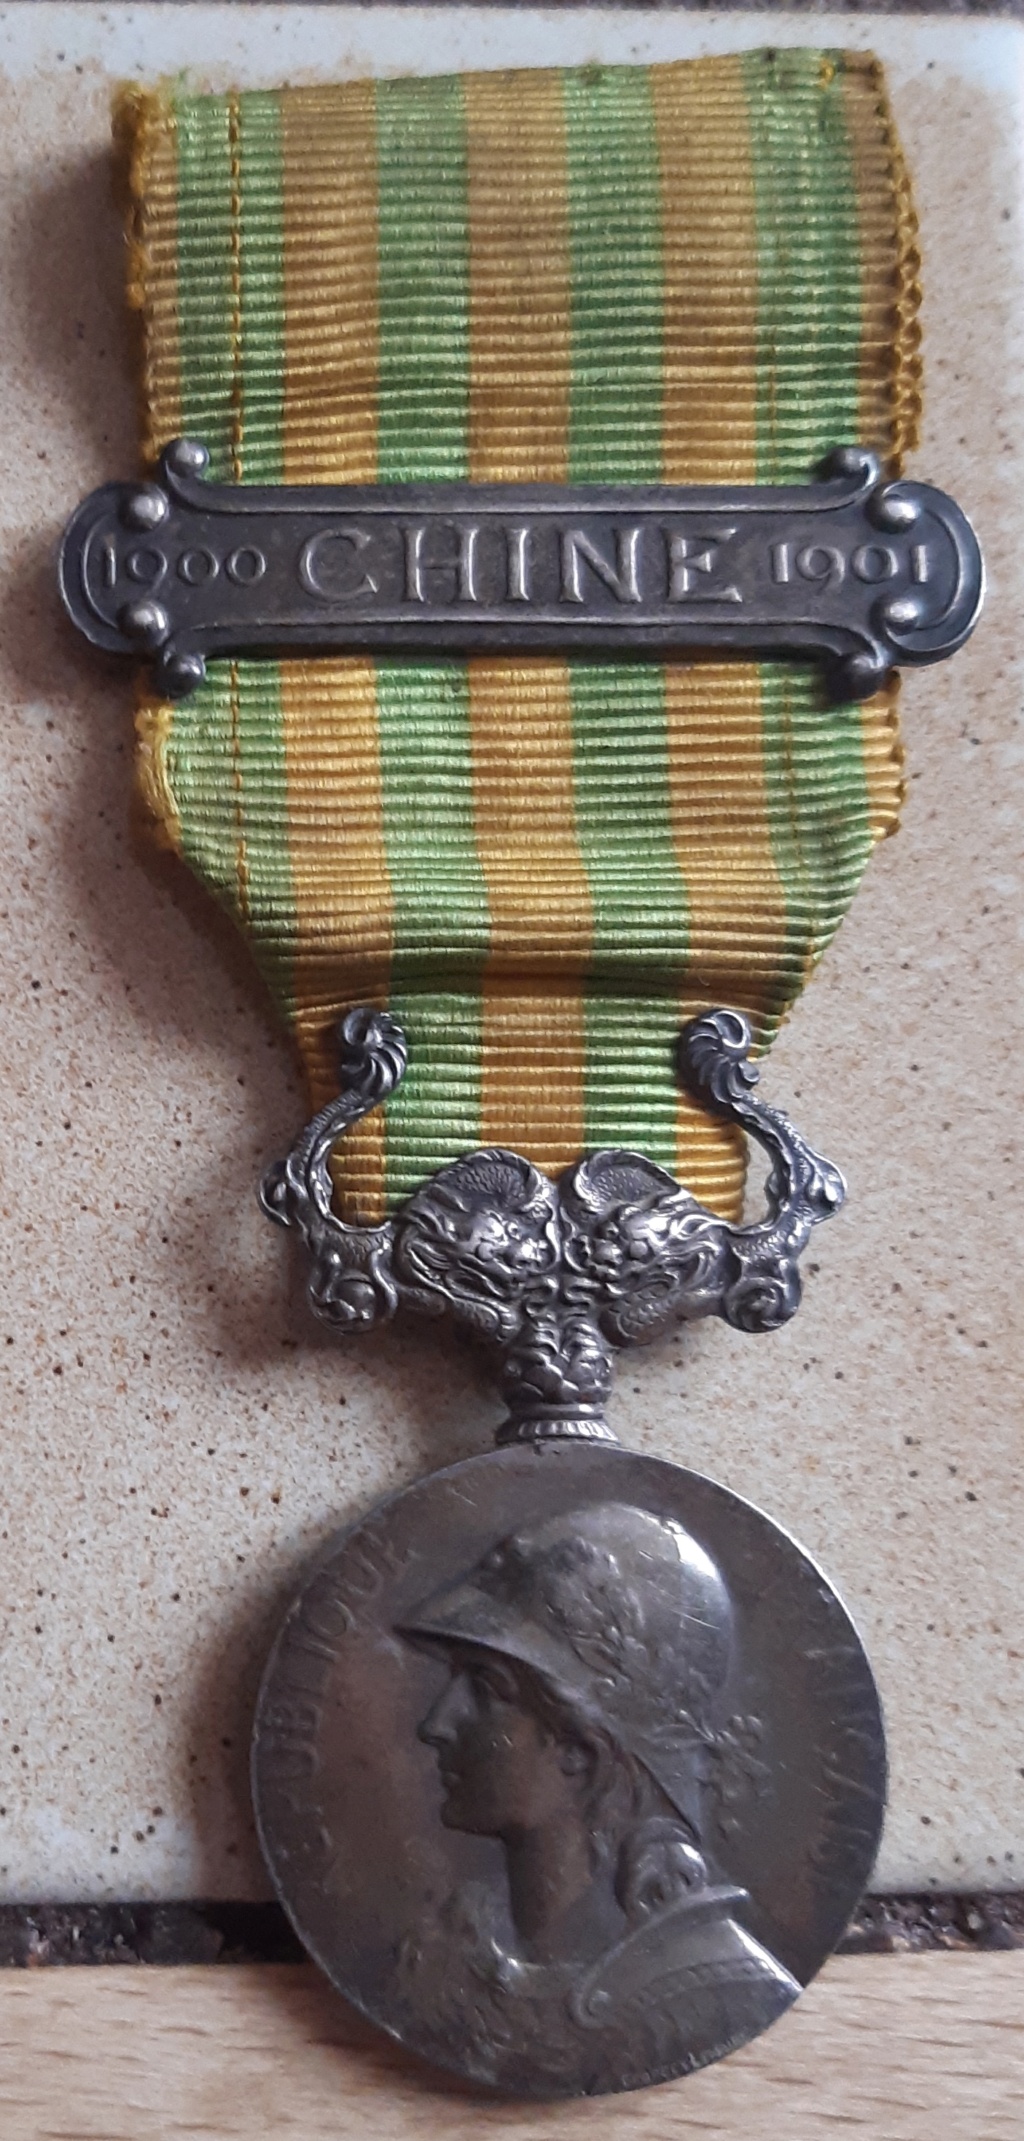 Médaille commémorative de Chine 1900 - 1901 Recto22